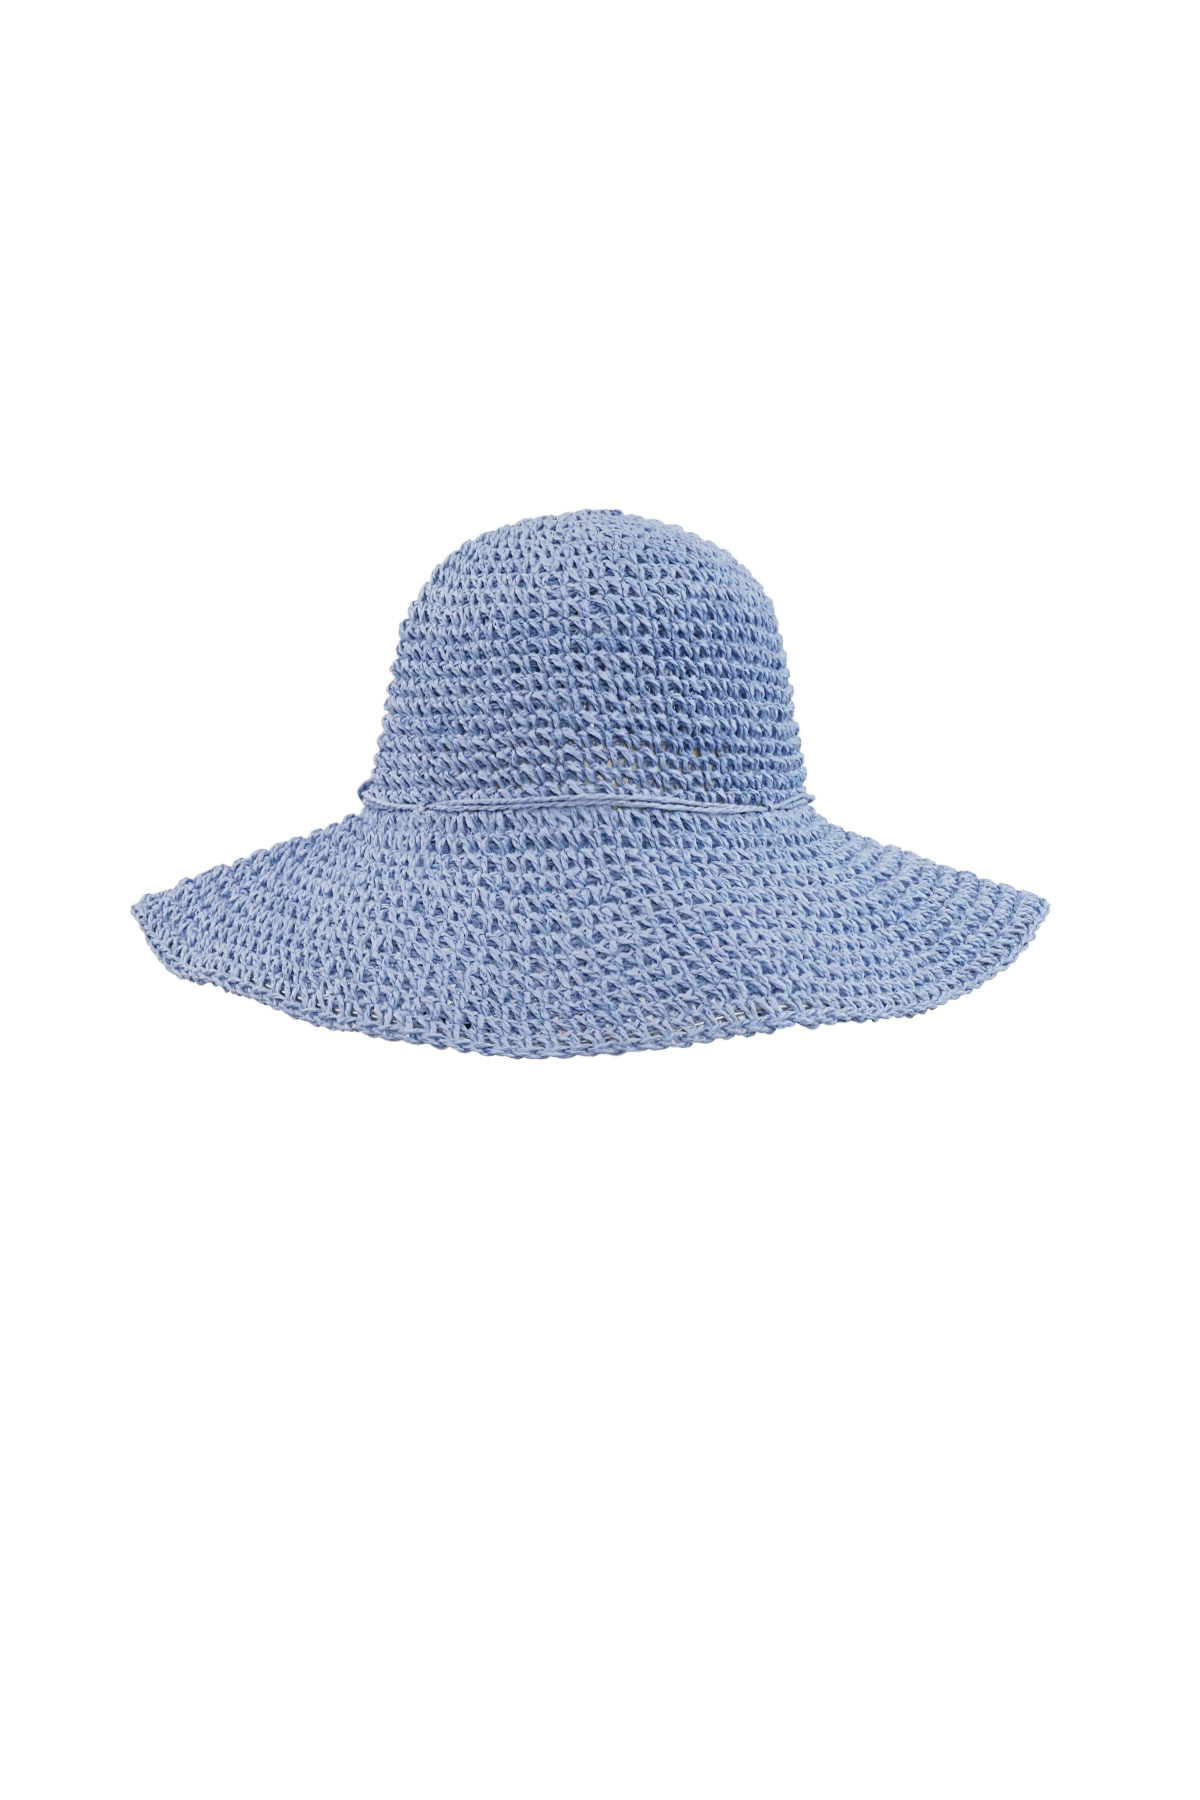 Crochet hoed met strik - blauw h5 Afbeelding5